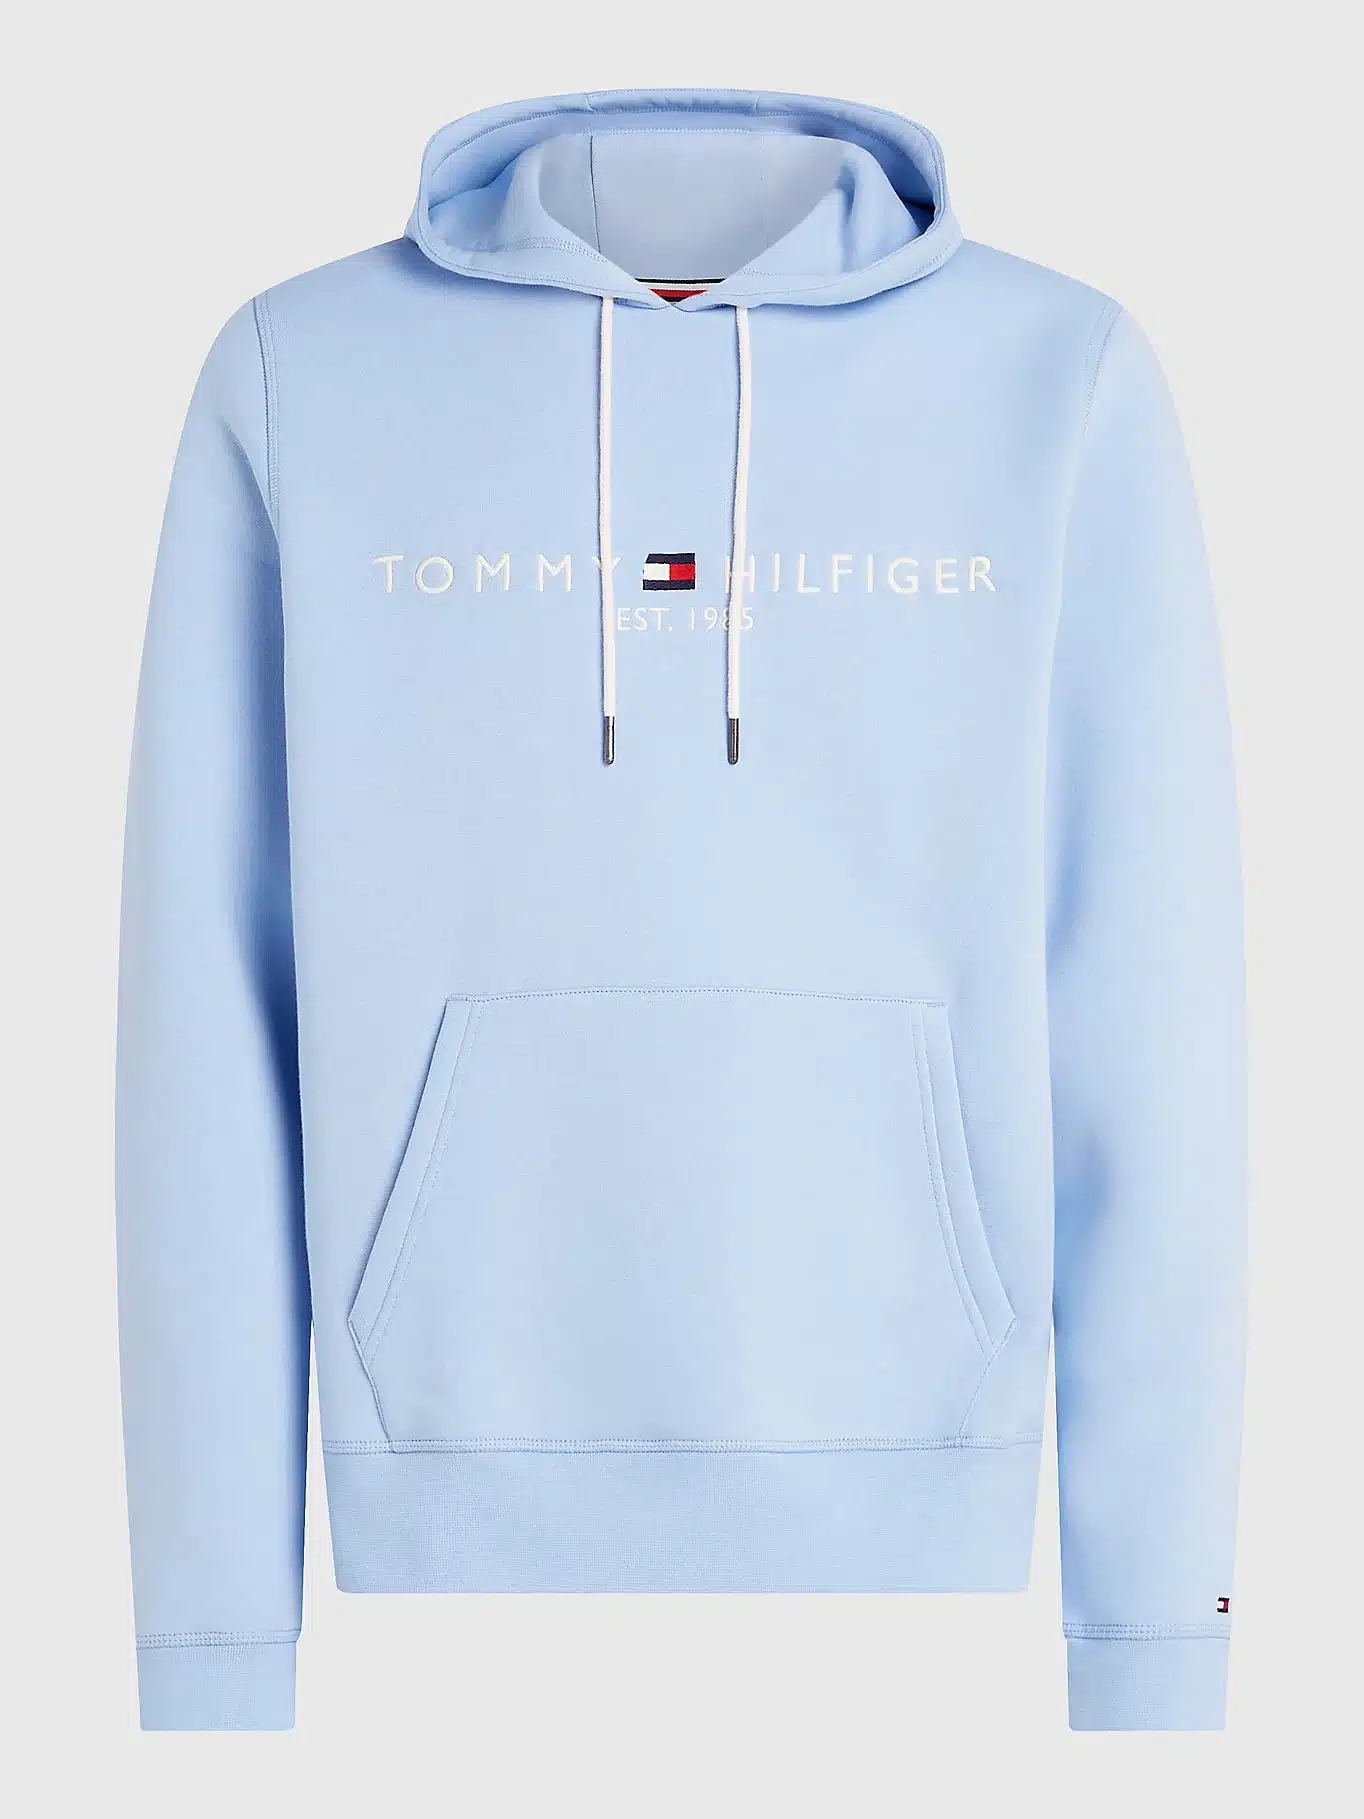 Perth træ Hemmelighed Buy Tommy Hilfiger Logo Hoody Vessel Blue - Scandinavian Fashion Store